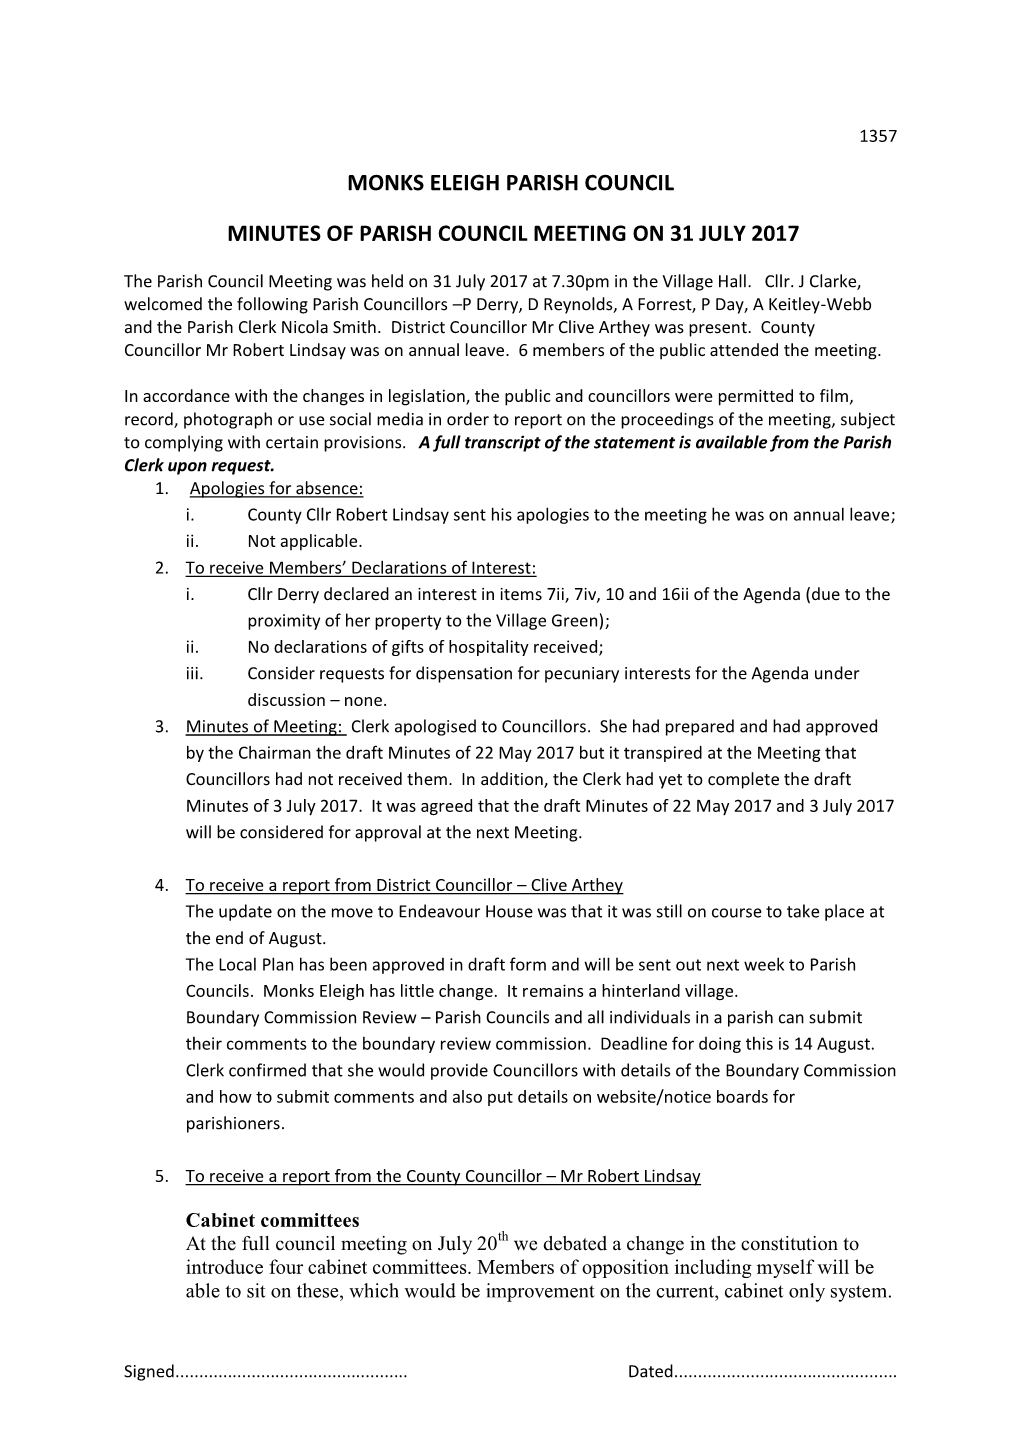 Monks Eleigh Parish Council Minutes of Parish Council